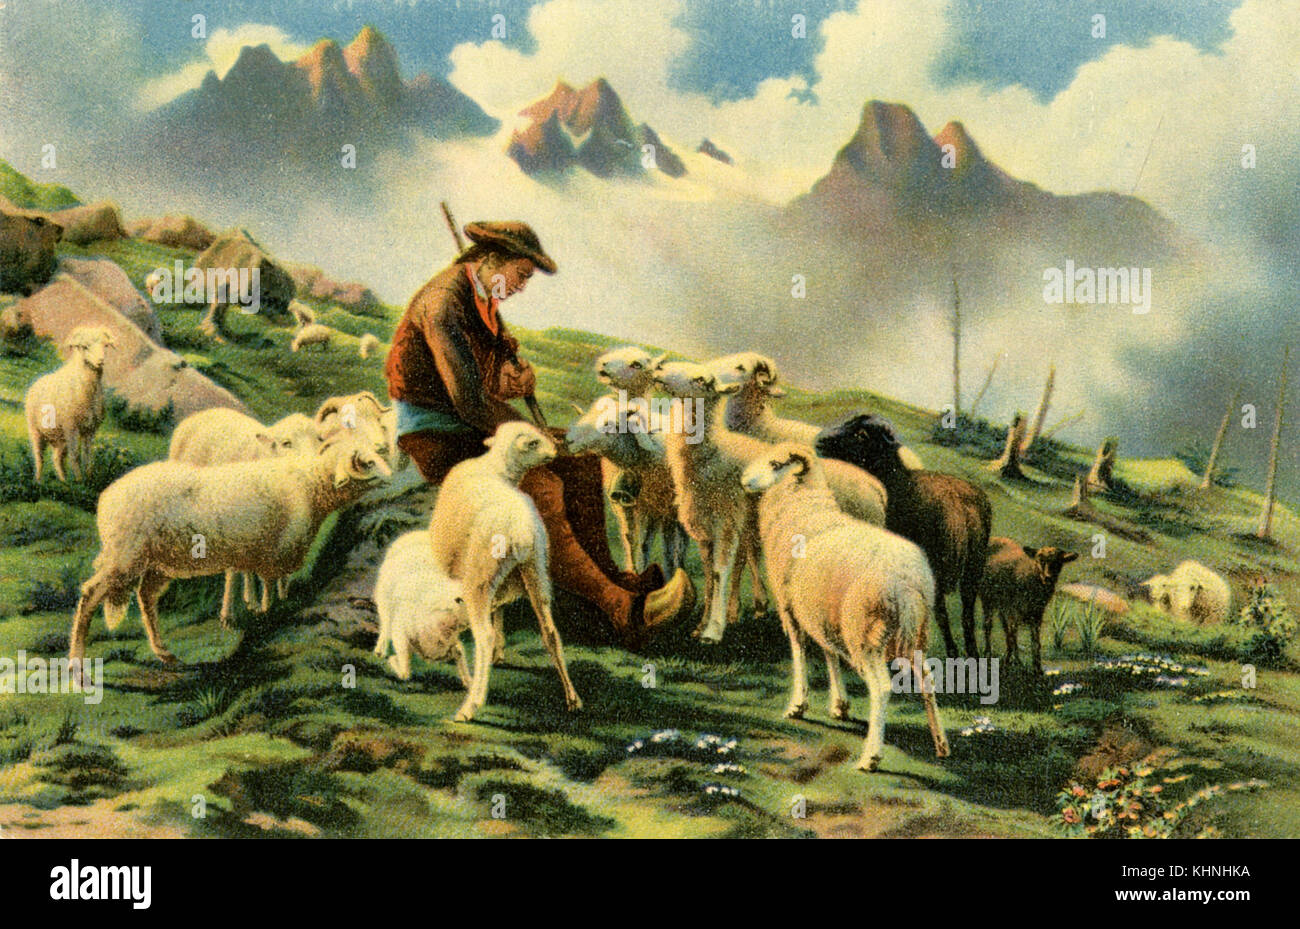 Shepherd with his sheep in the mountains of the Pyrenees, by Rosa Bonheur (Schäfer mit seinen Schafen vor Bergkulisse der Pyrenäen, von Rosa Bonheur) Stock Photo